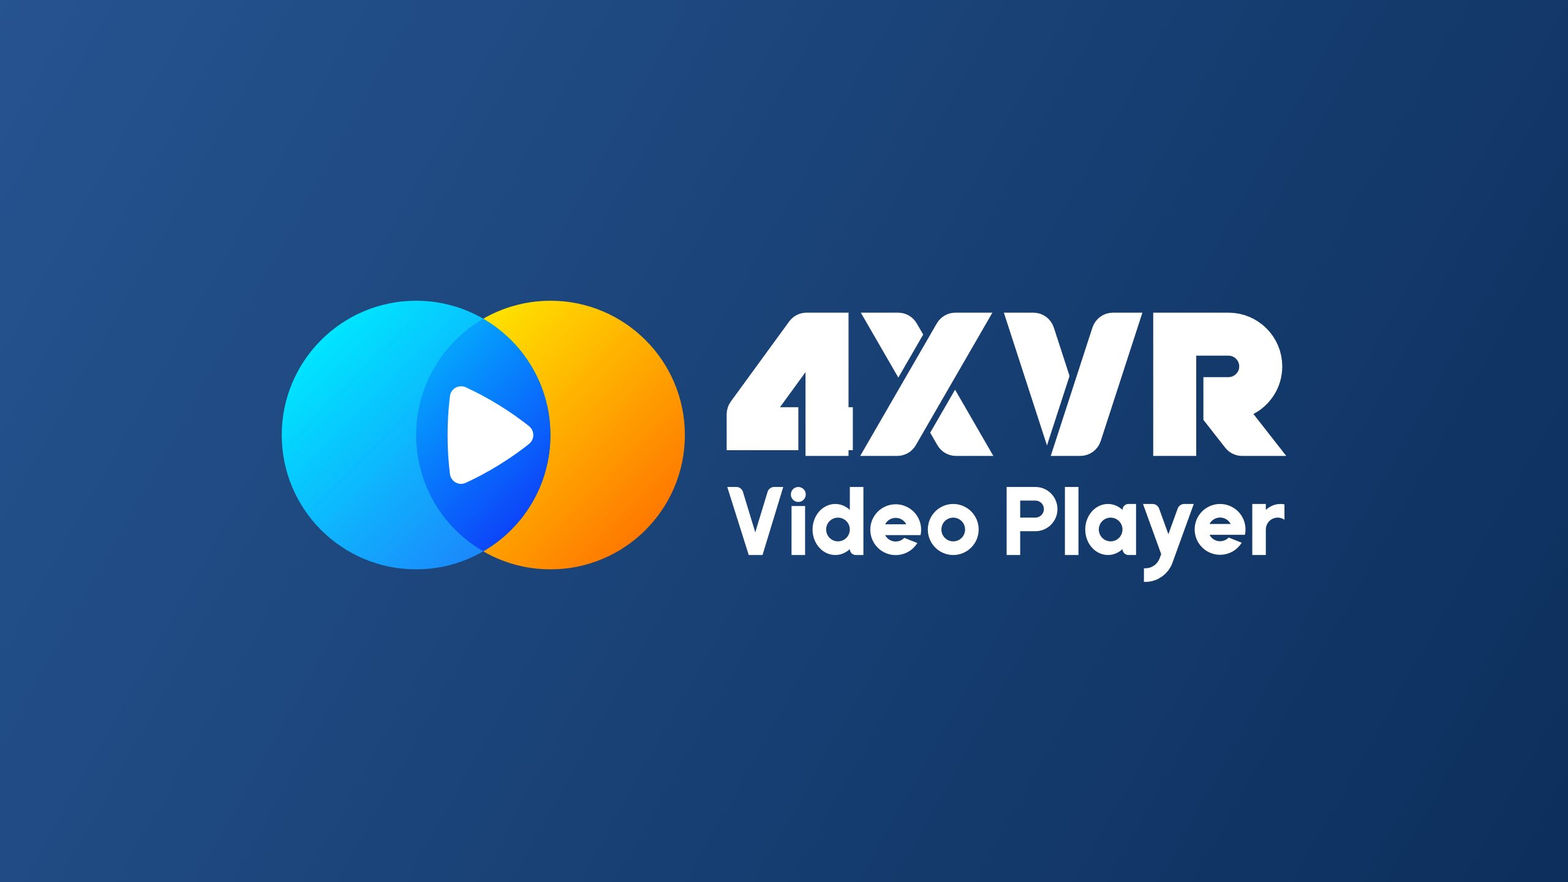 4XVR Video Player